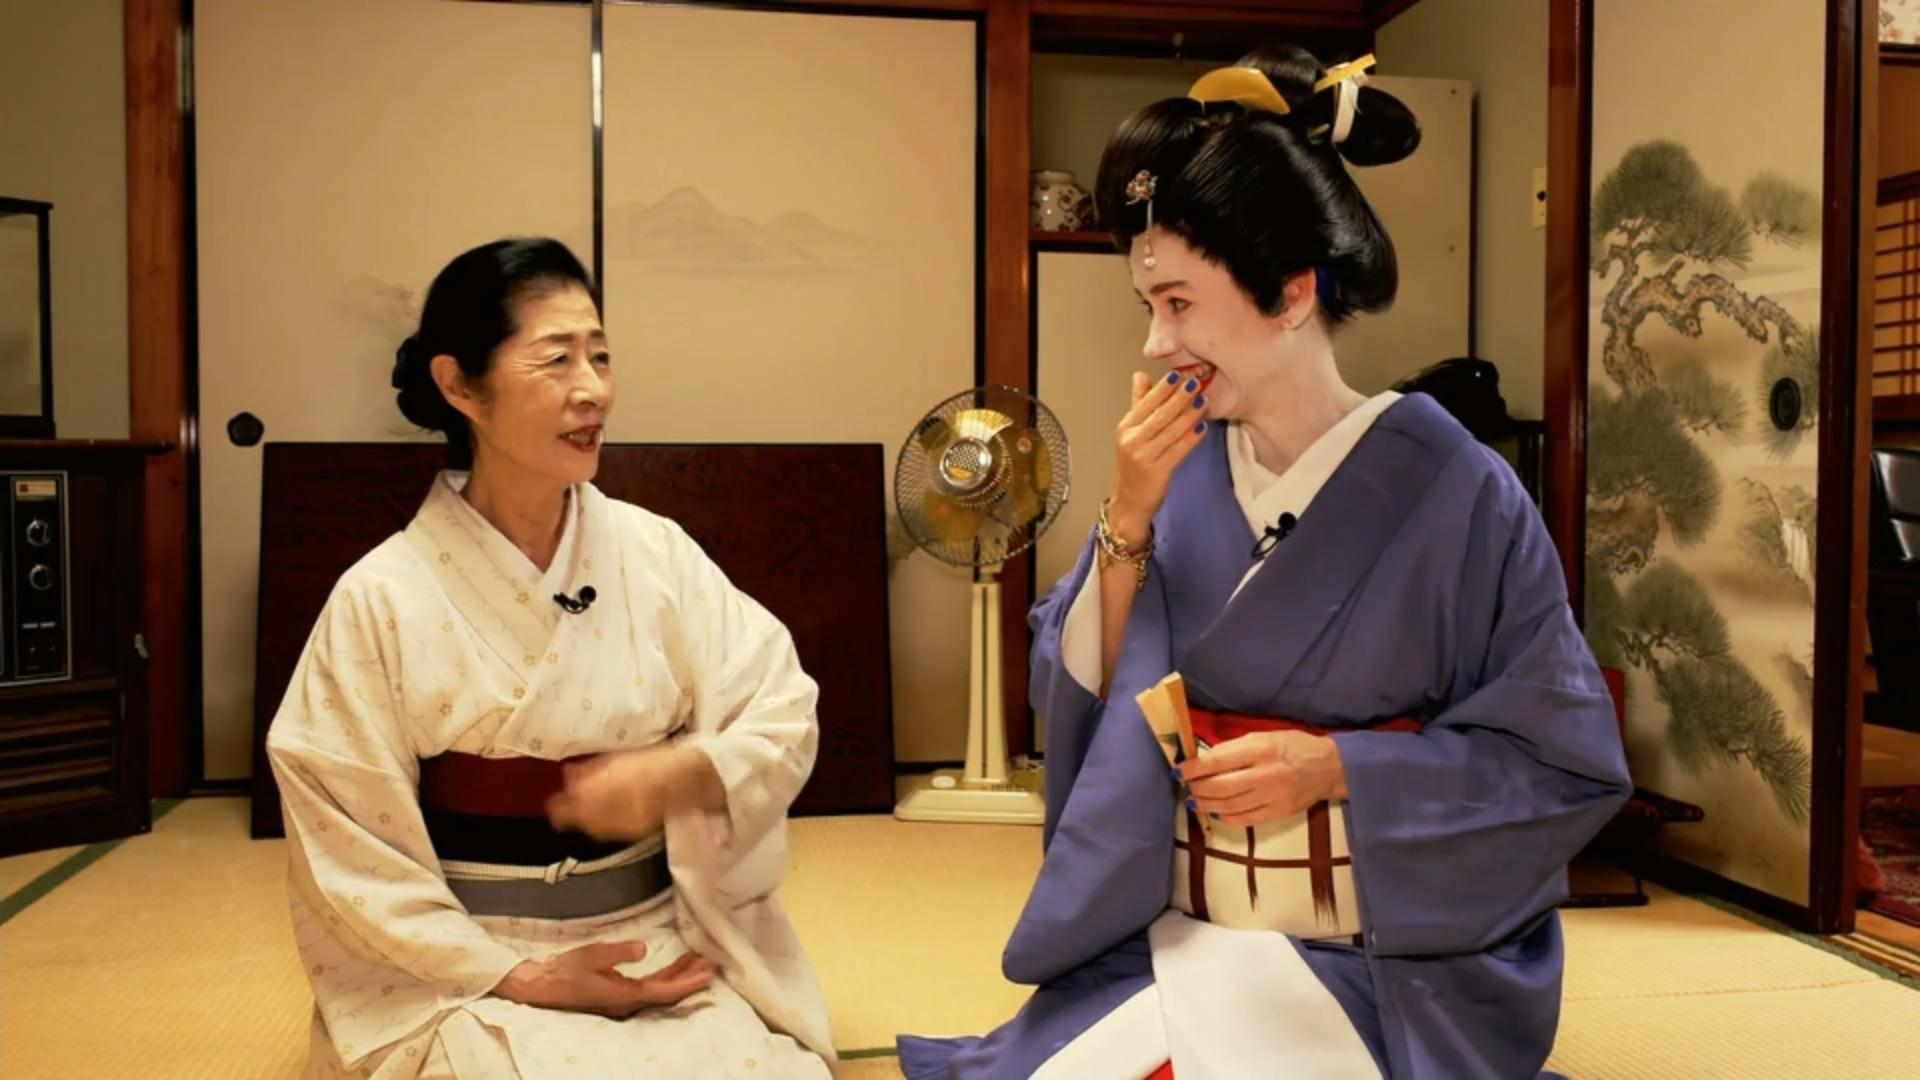 Einblick in die traditionellen Künste der Geishas Japanische Geishas!